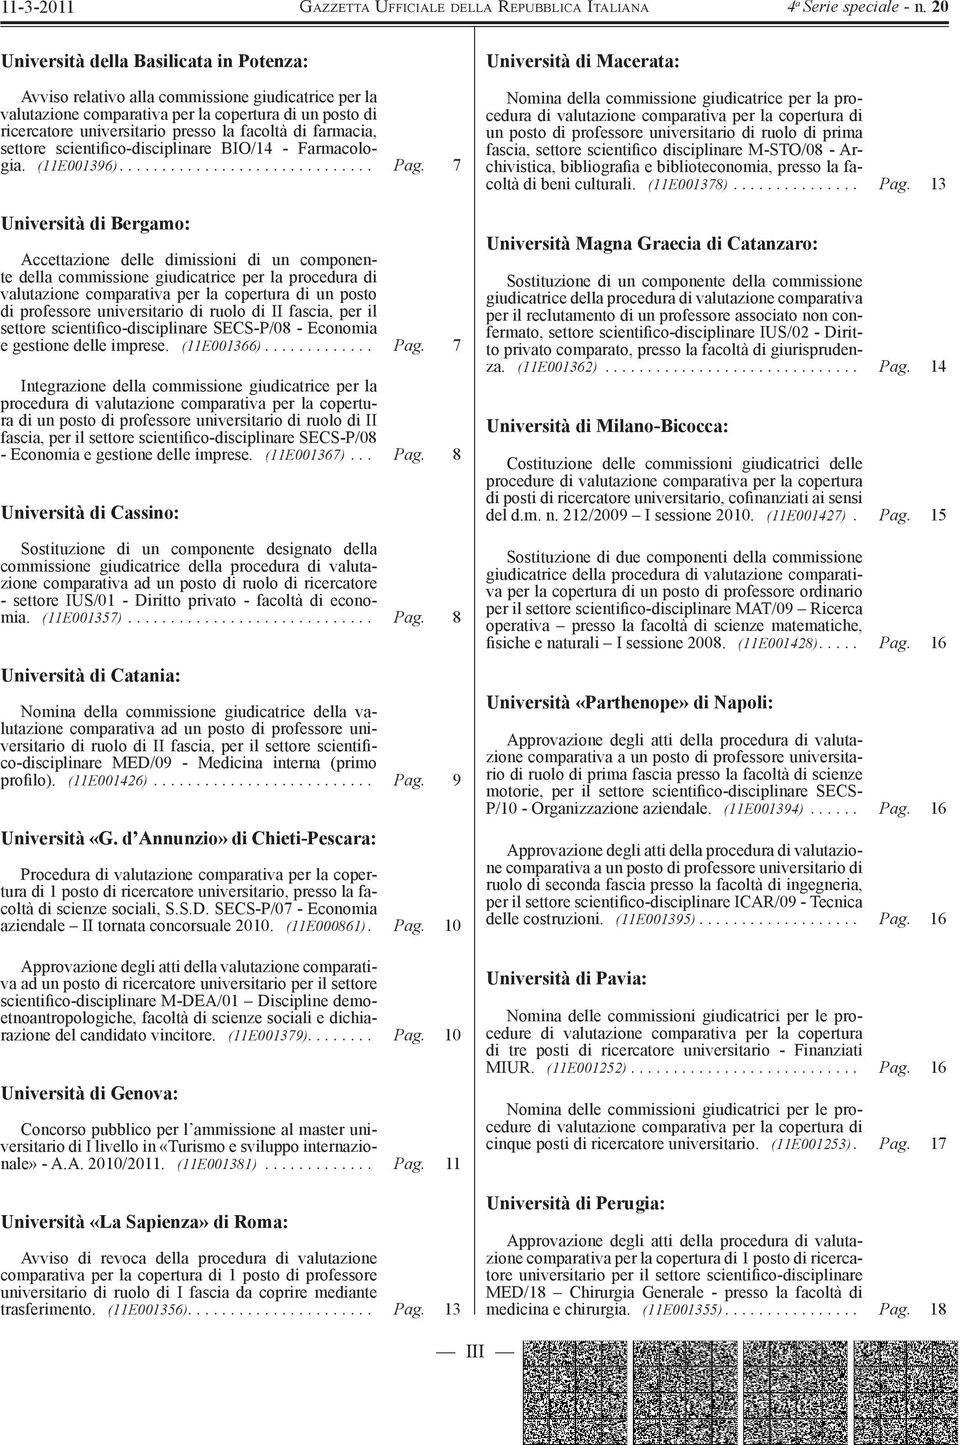 7 Università di Bergamo: Accettazione delle dimissioni di un componente della commissione giudicatrice per la procedura di valutazione comparativa per la copertura di un posto di professore